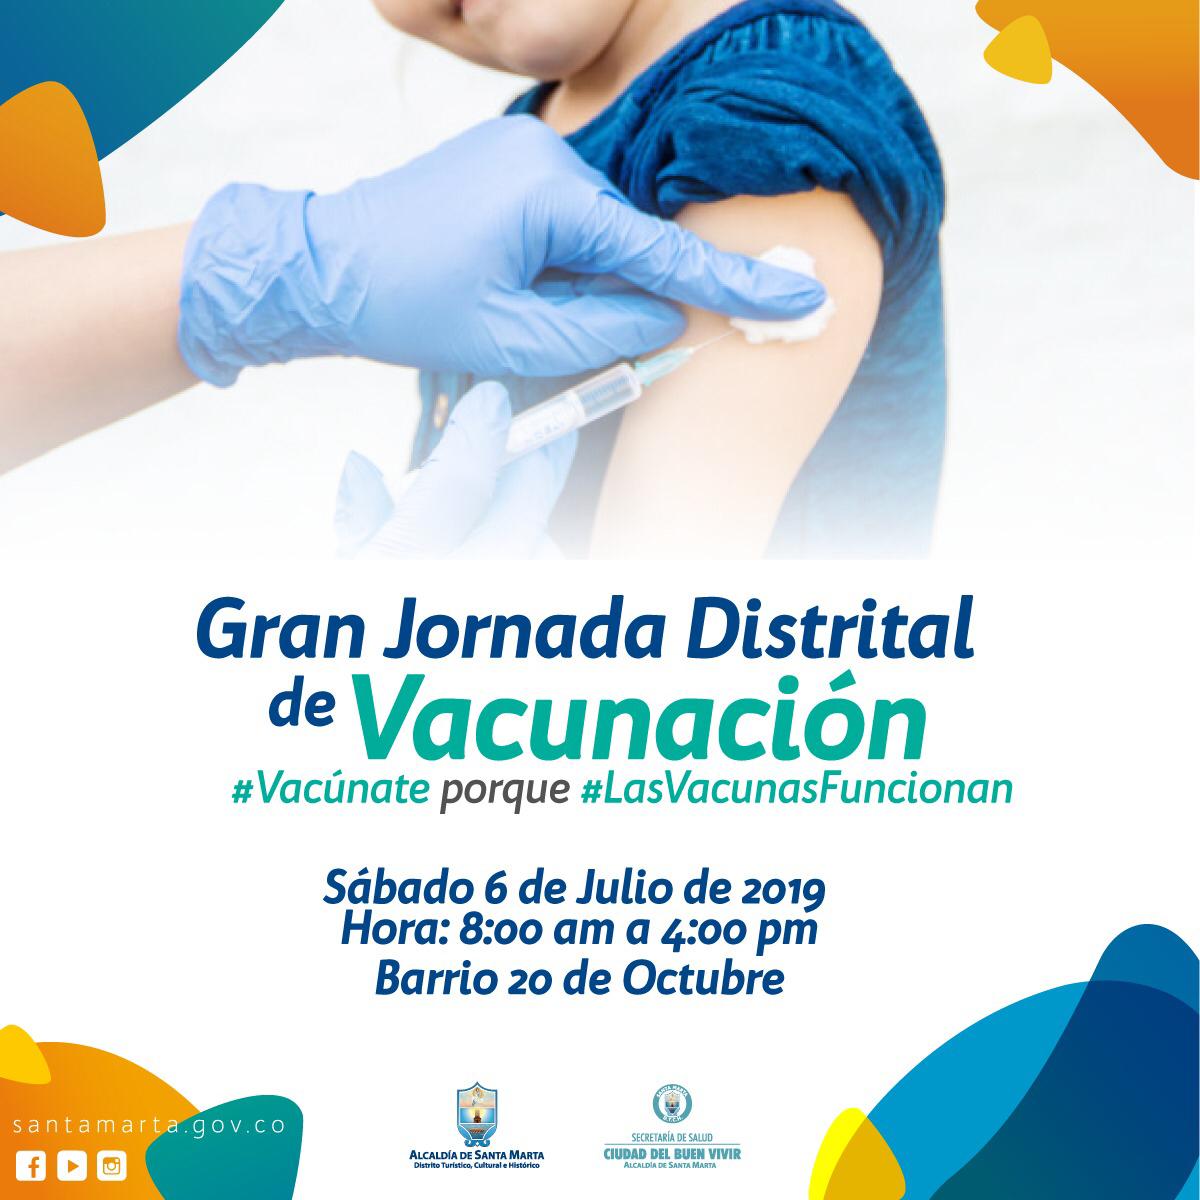 Este sábado es la IV Jornada Distrital de Vacunación